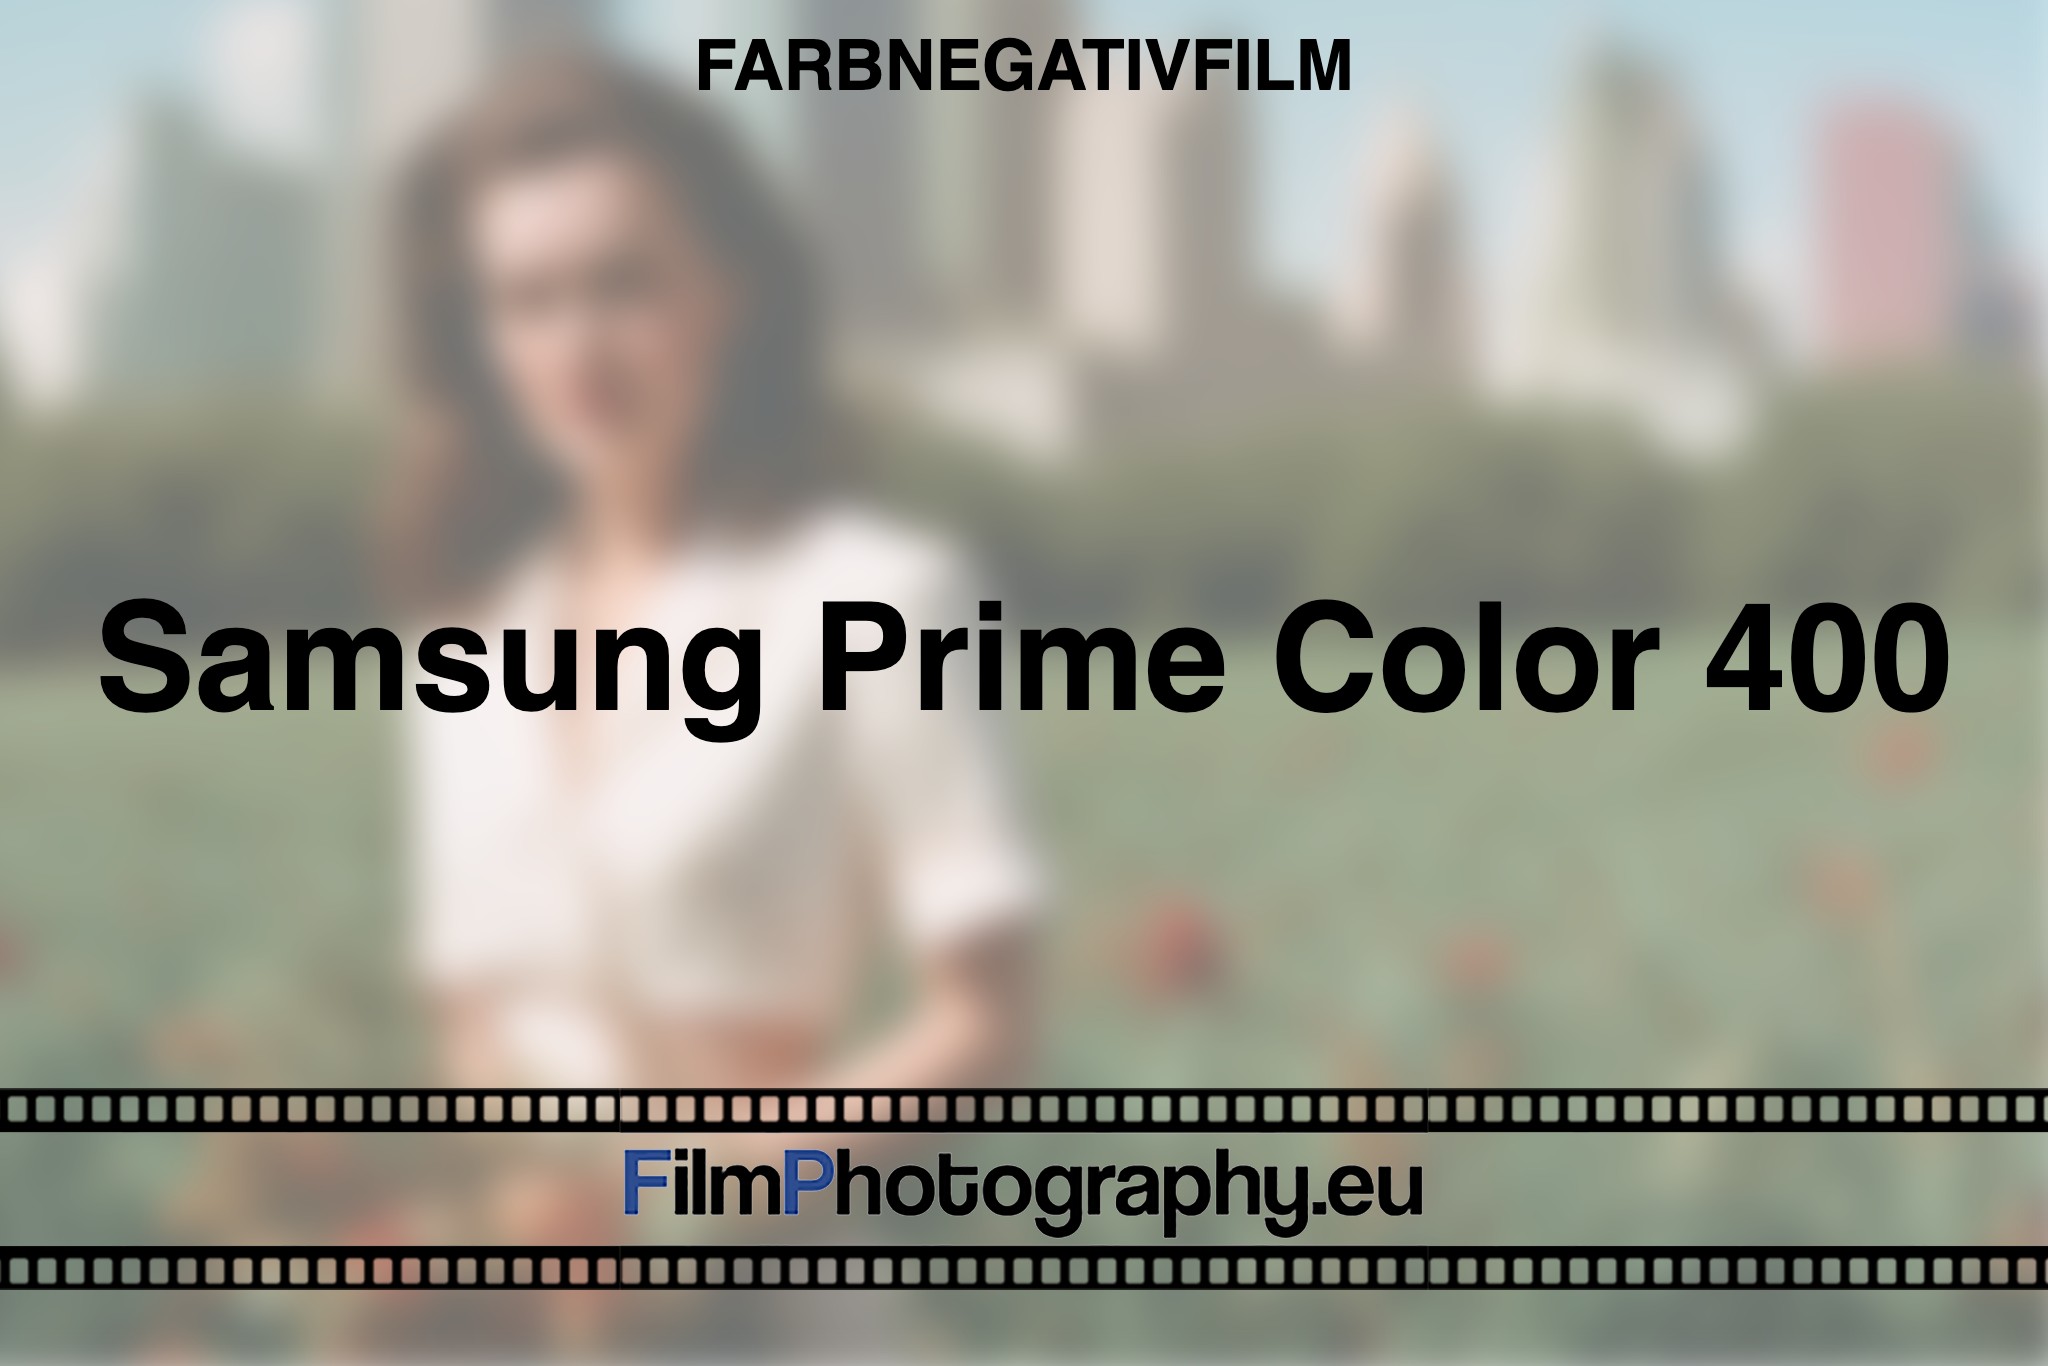 samsung-prime-color-400-farbnegativfilm-bnv